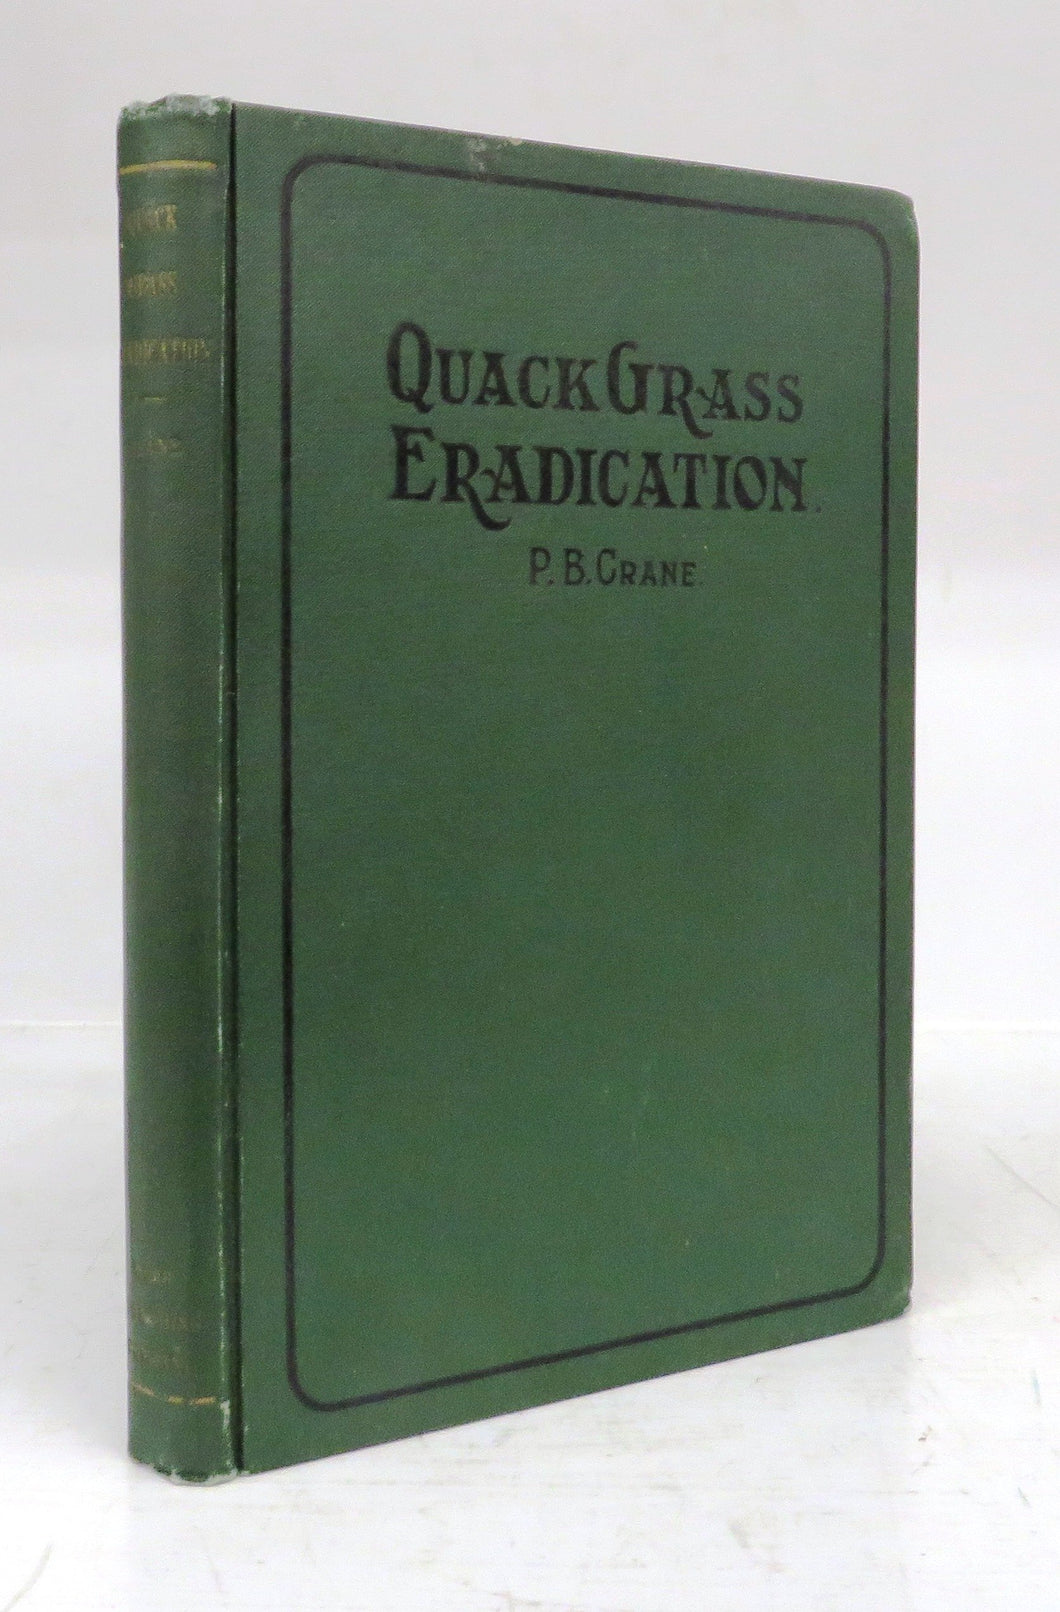 Quack Grass Eradication